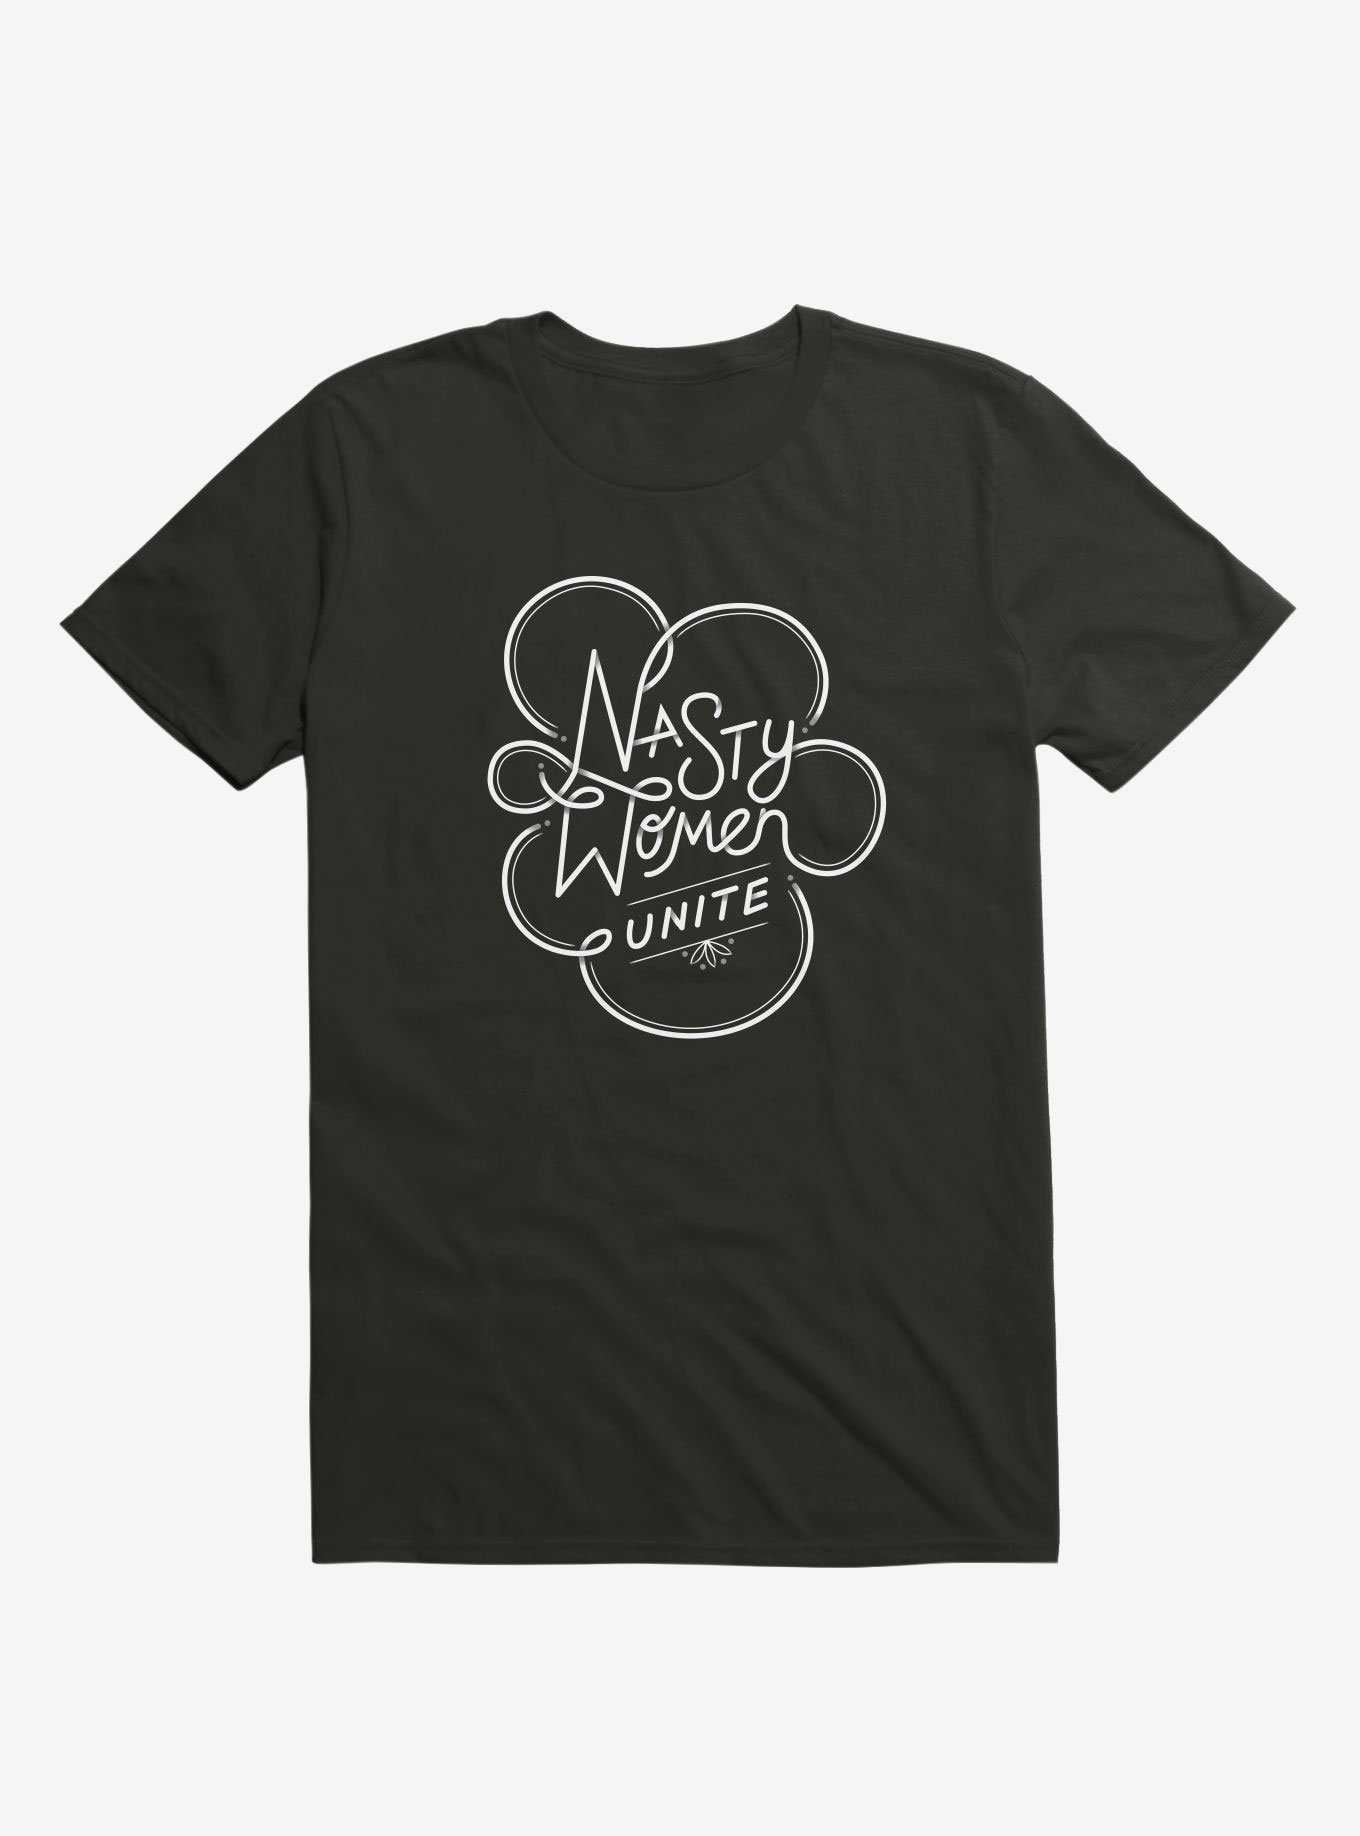 Nasty Women Unite T-Shirt, , hi-res